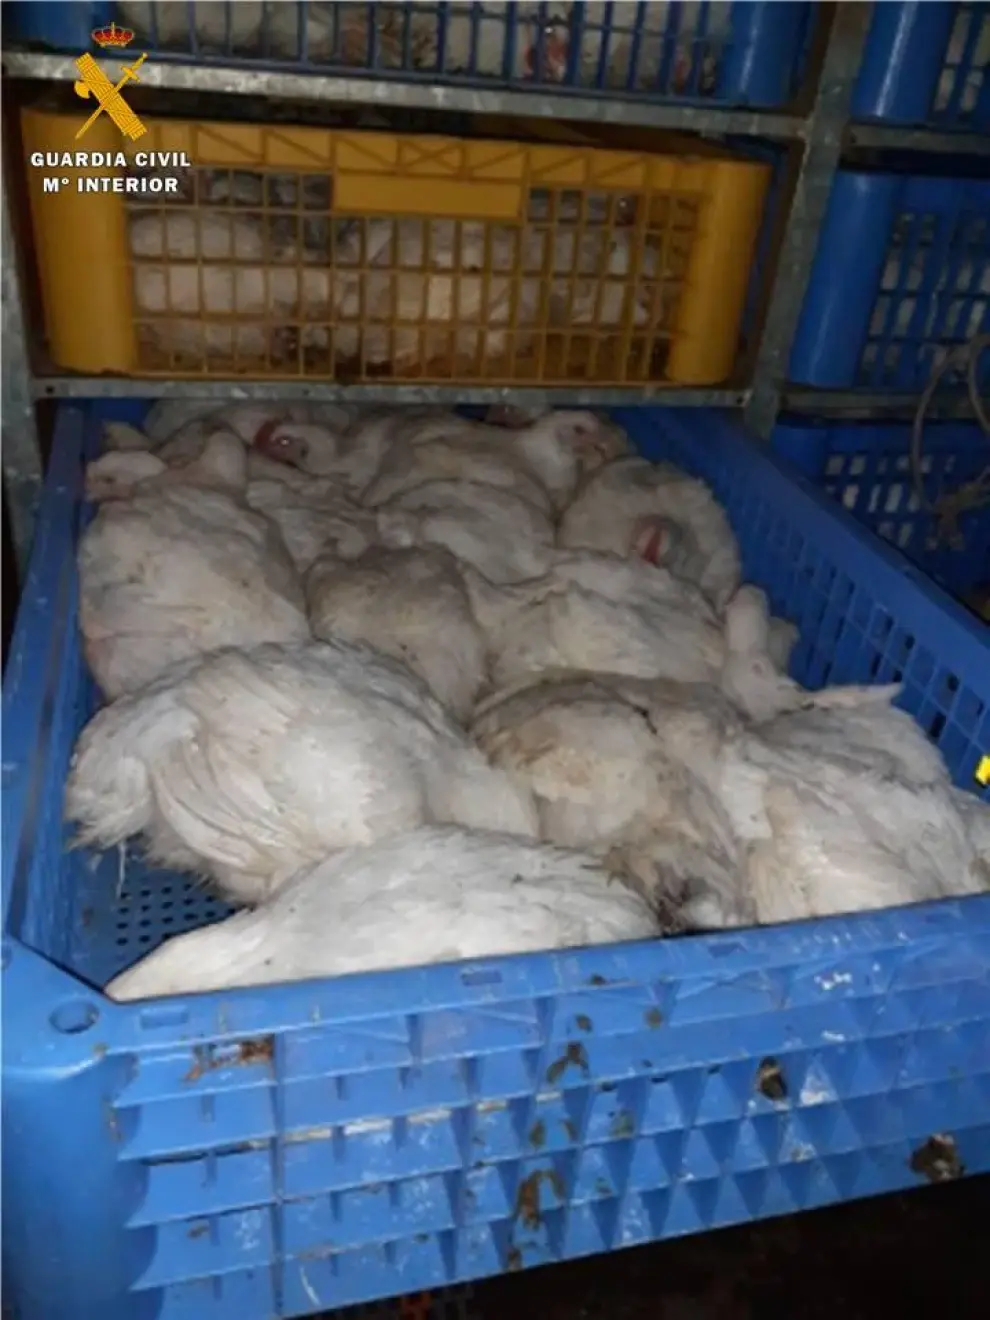 Los pollos iban hacinados en el interior del camión.